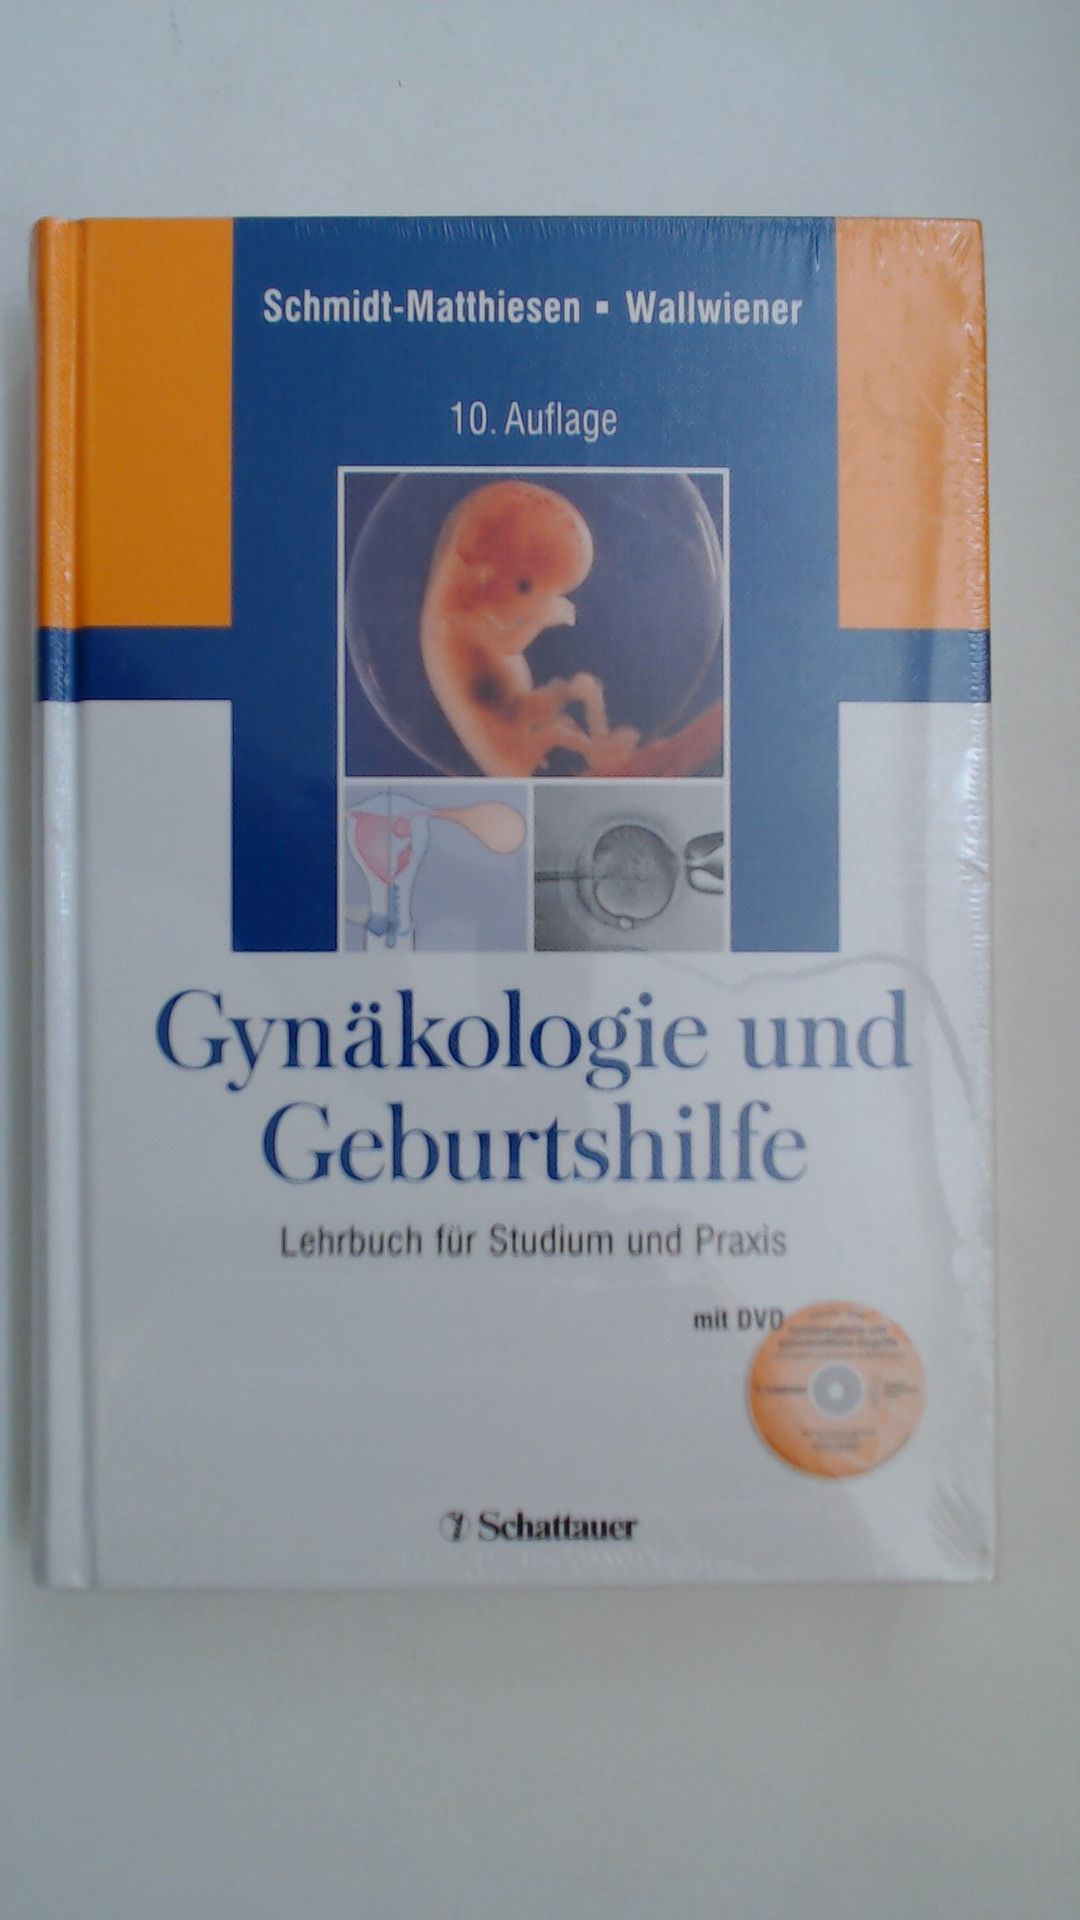 Gynäkologie und Geburtshilfe: Lehrbuch für Studium und Praxis. Mit der DVD 